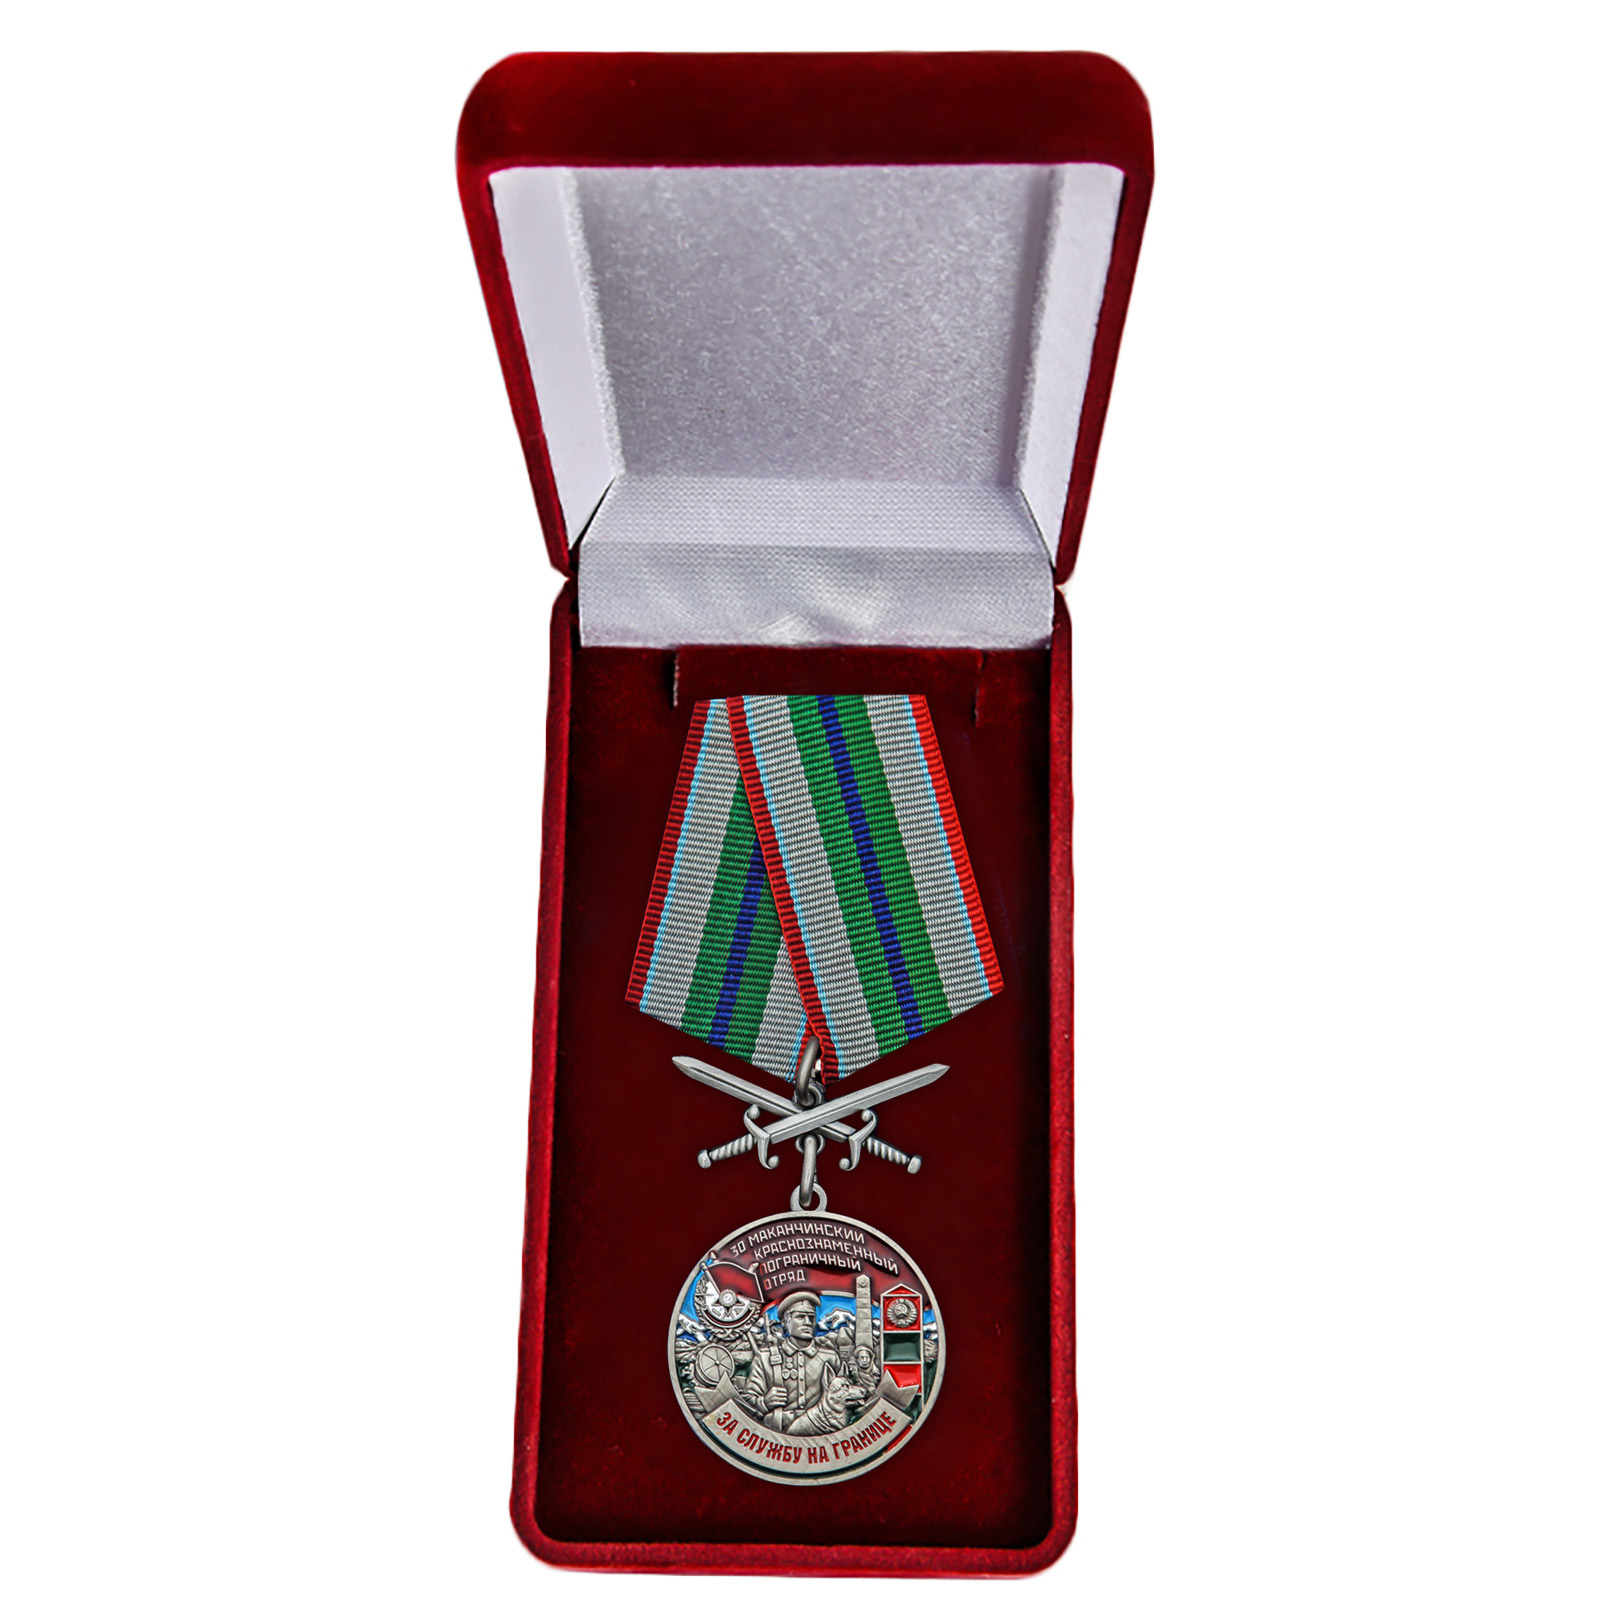 Купить медаль За службу в Маканчинском пограничном отряде выгодно